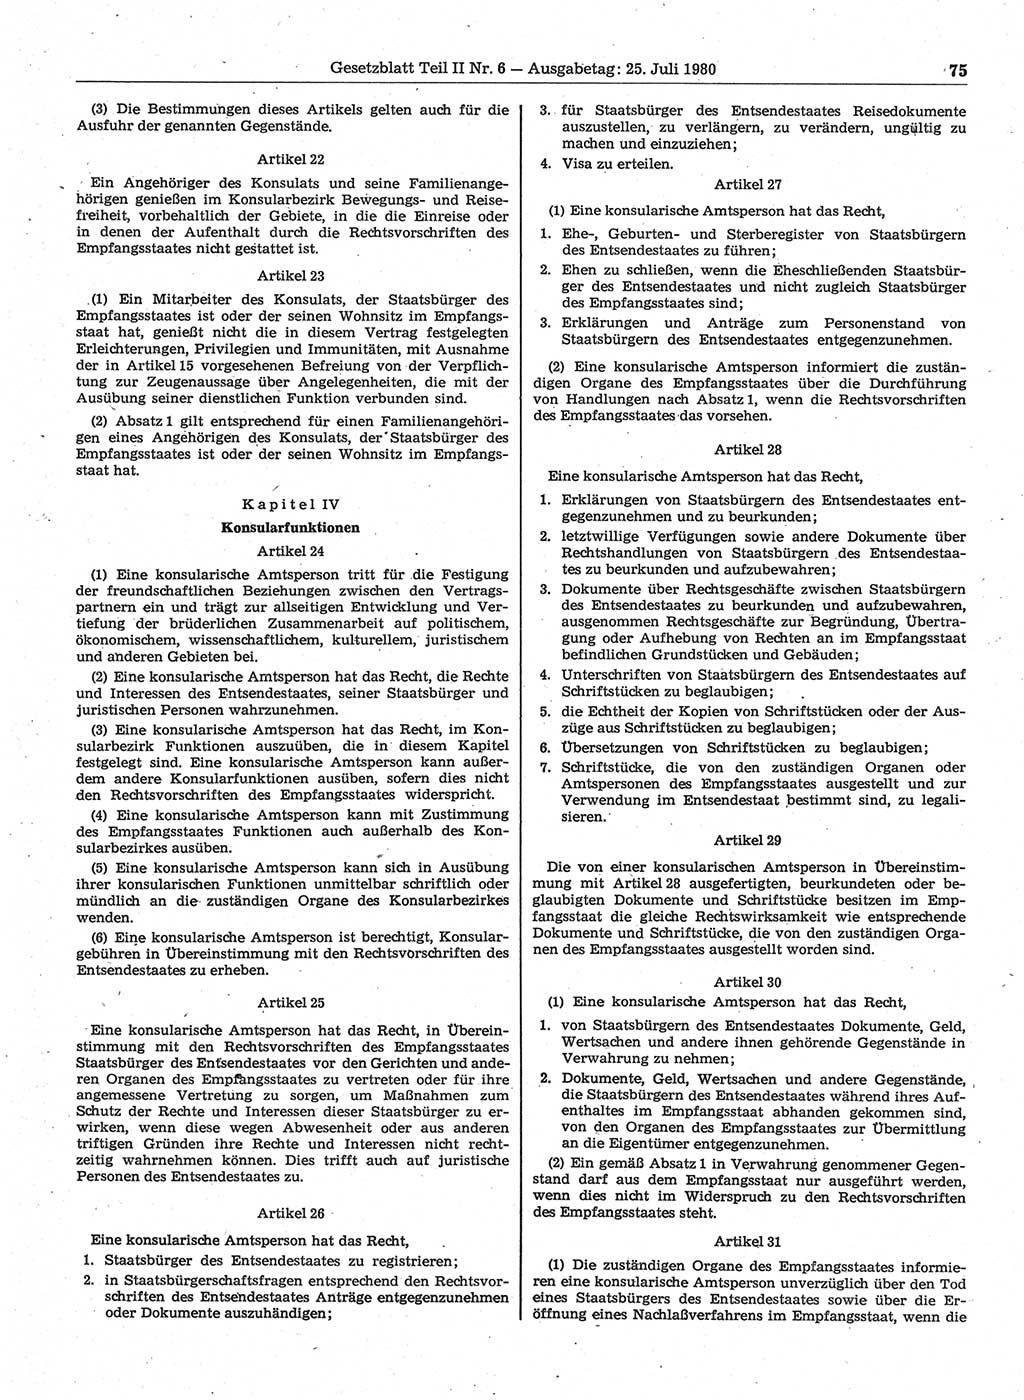 Gesetzblatt (GBl.) der Deutschen Demokratischen Republik (DDR) Teil ⅠⅠ 1980, Seite 75 (GBl. DDR ⅠⅠ 1980, S. 75)